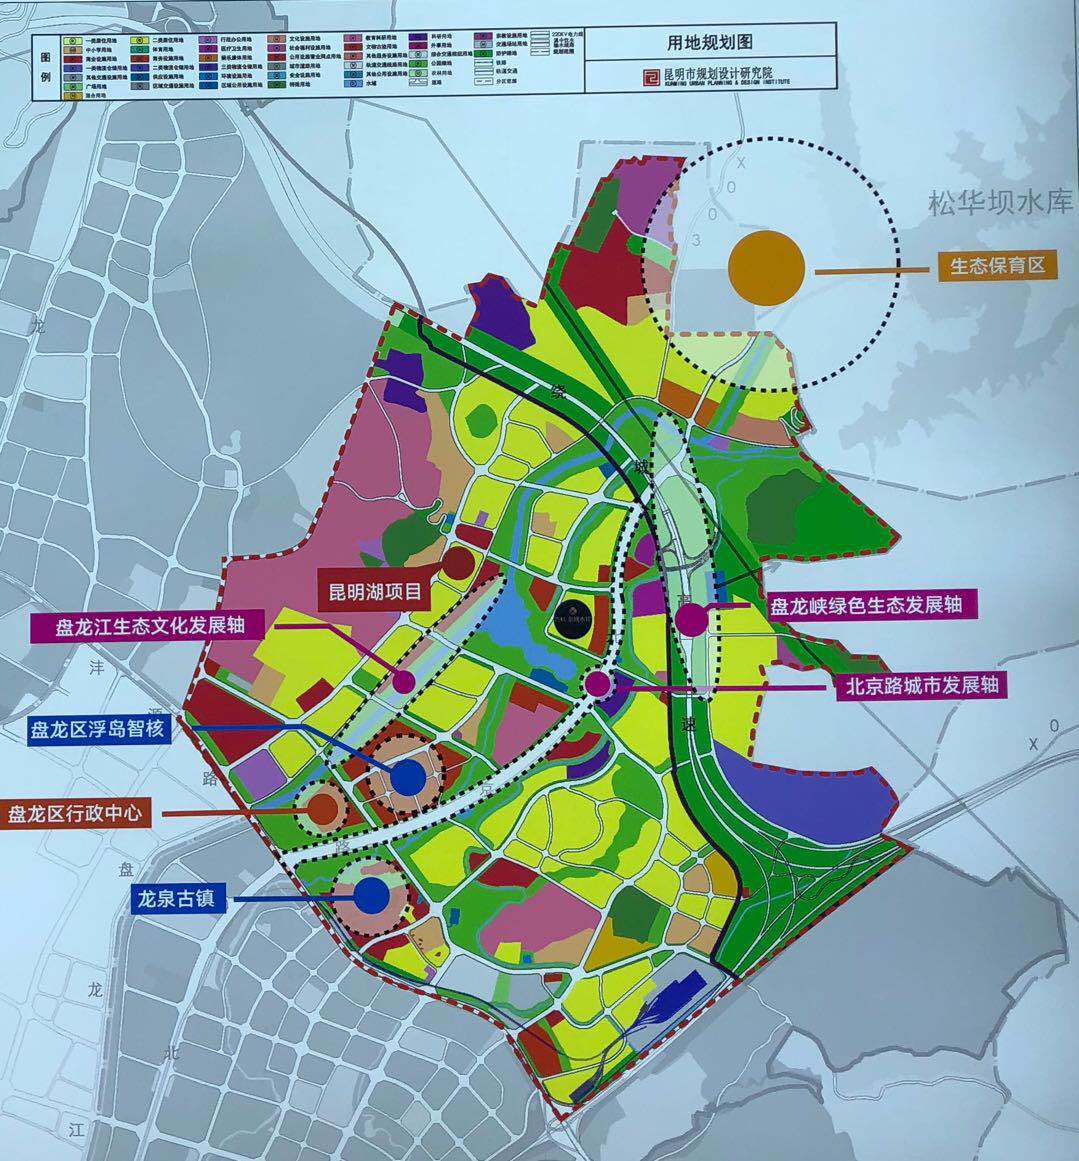 依据《昆明市城市总体规划(2011—2020)》,昆明城市发展将沿南